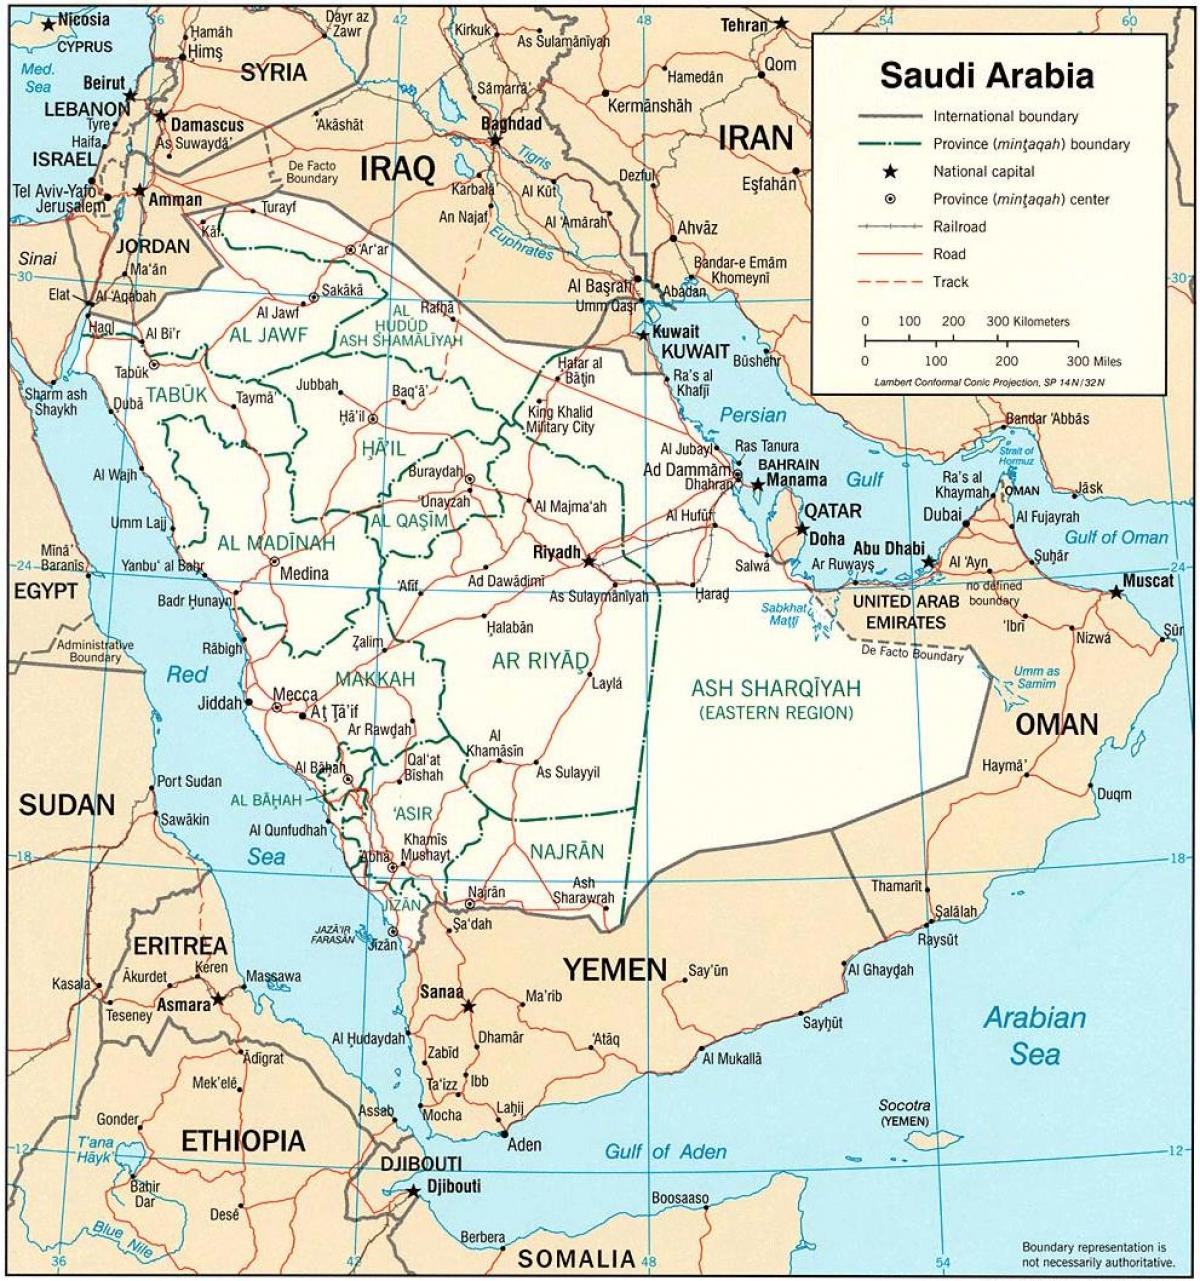 નકશો સાઉદી અરેબિયા રાજકીય